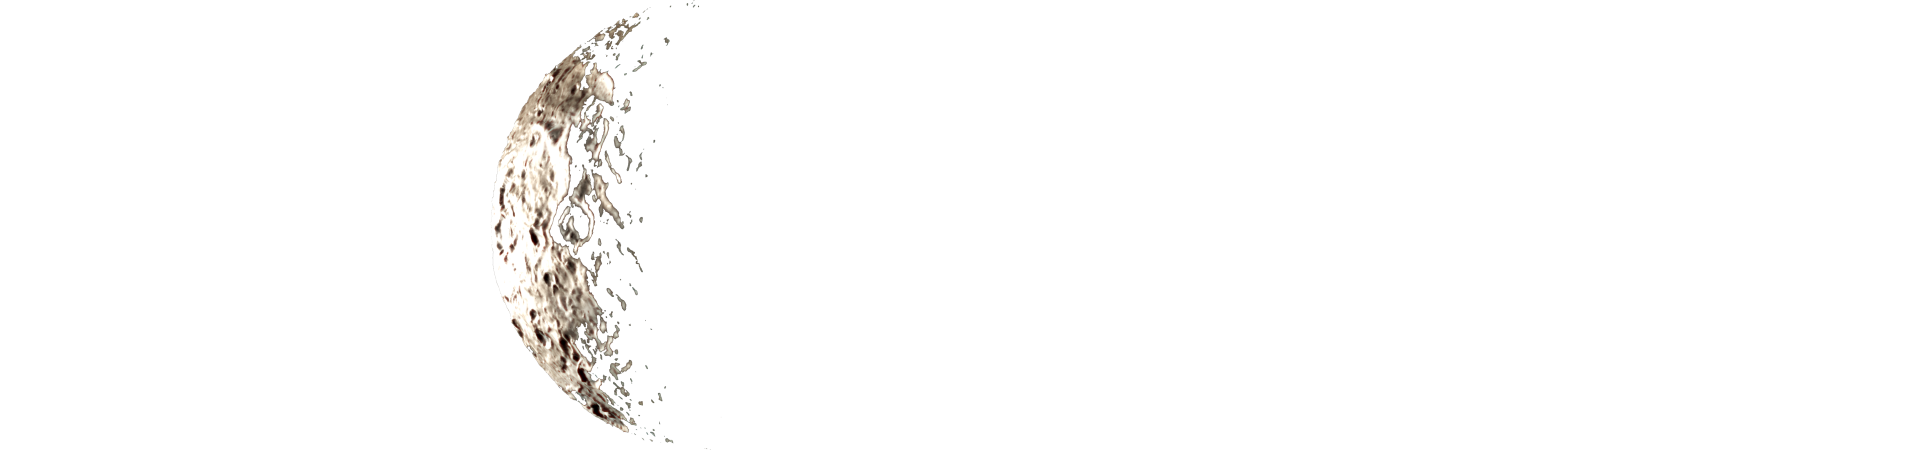 Planet Workshop